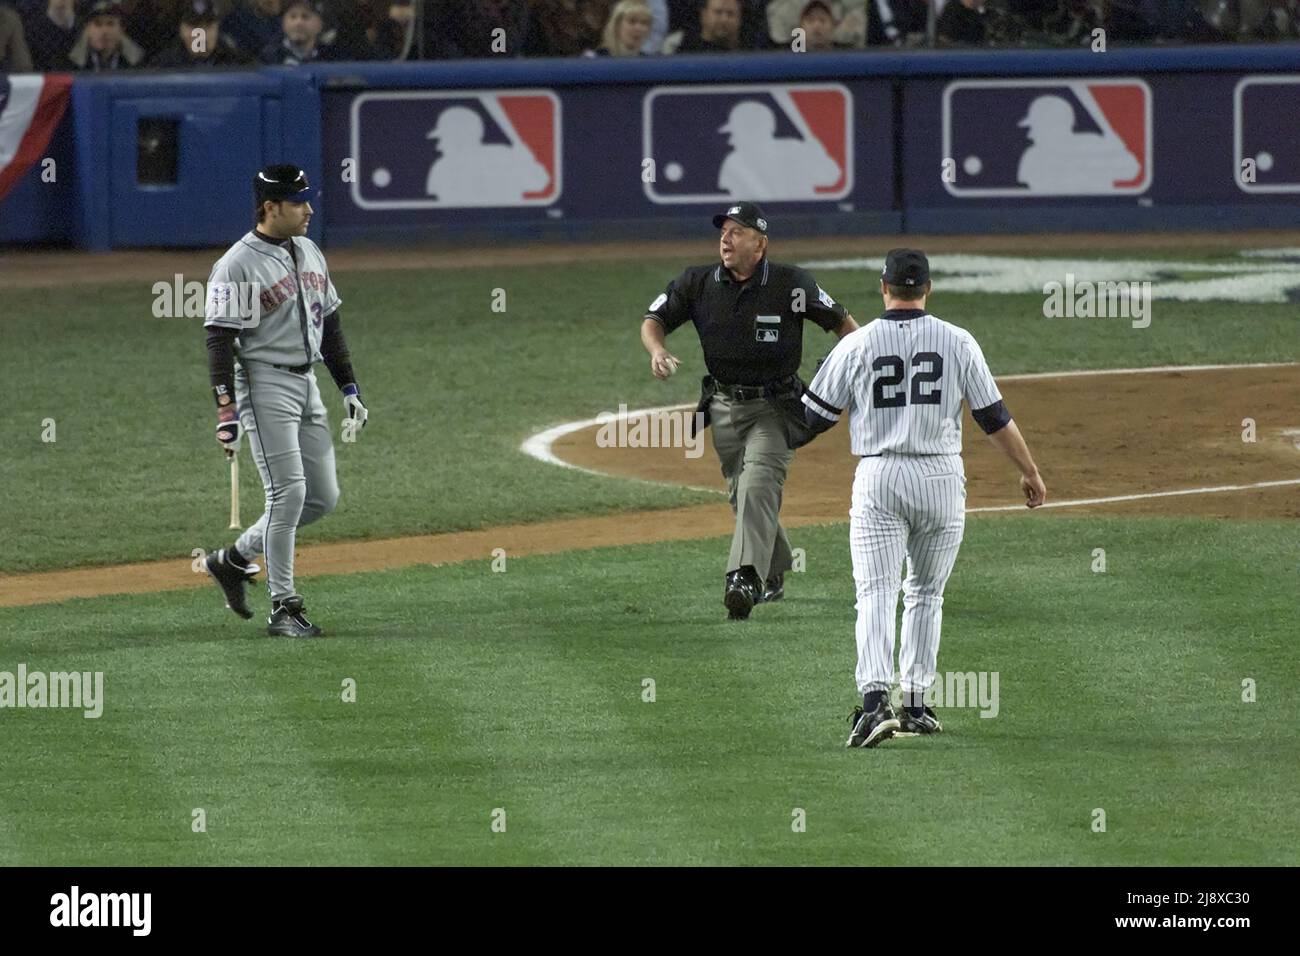 Il batter Mike Piazza dei New York Mets, a sinistra, affronta il lanciatore di New York Yankees Roger Clemens dopo aver gettato un matto durante la World Series Game 1 allo Yankees Stadium di New York il 22 ottobre 2000. Home piatto umpire Charlie Reliford è mostrato al centro. Foto di Francis Specker Foto Stock